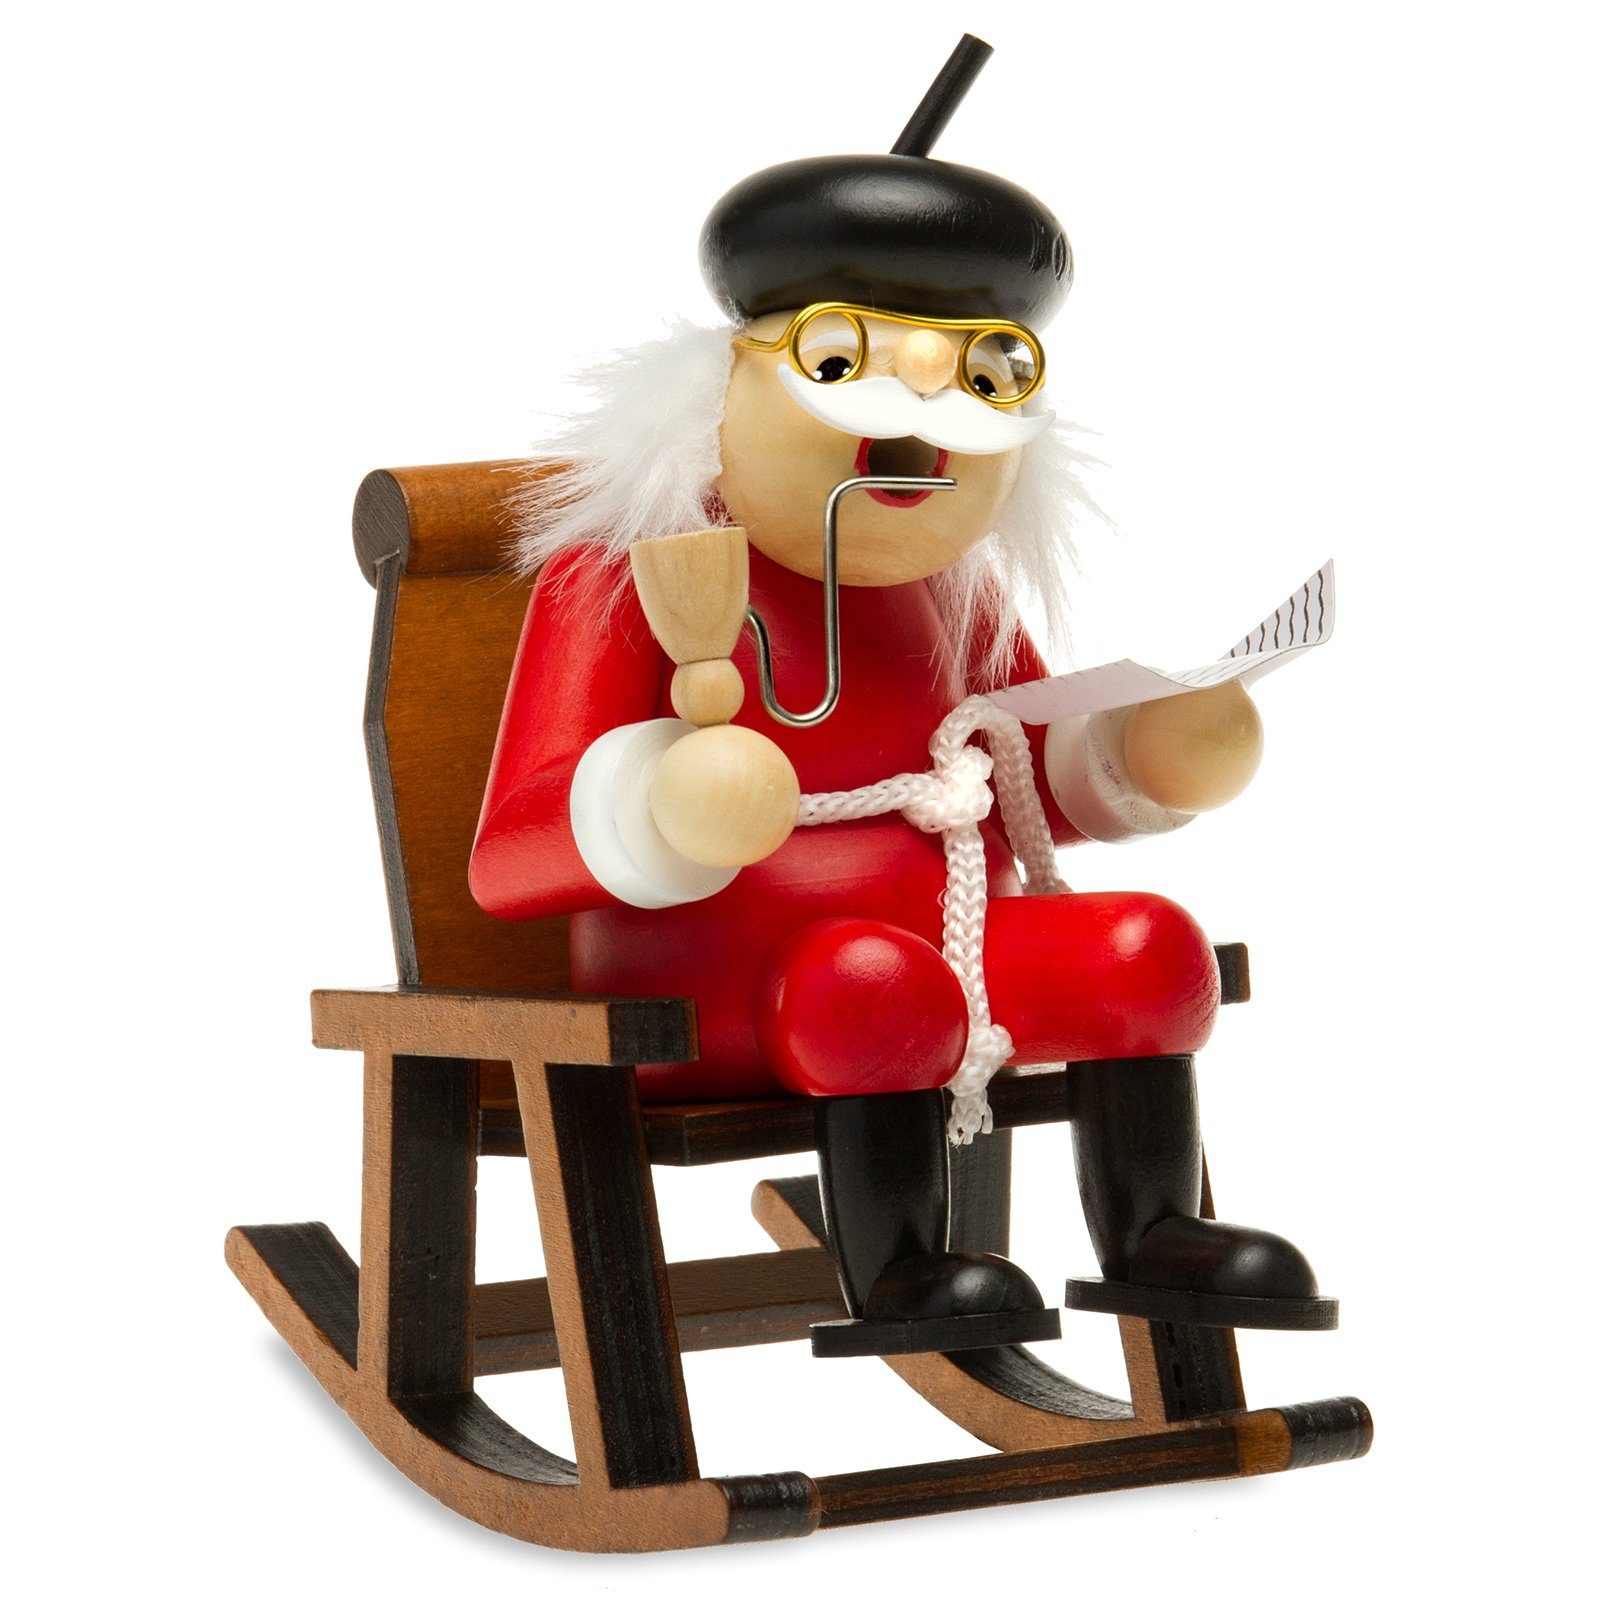 SIKORA Weihnachtsfigur SIKORA RM-F Räuchermännchen aus Holz Oma oder Opa im Schaukelstuhl F02 rot - Opa auf dem Schaukelstuhl